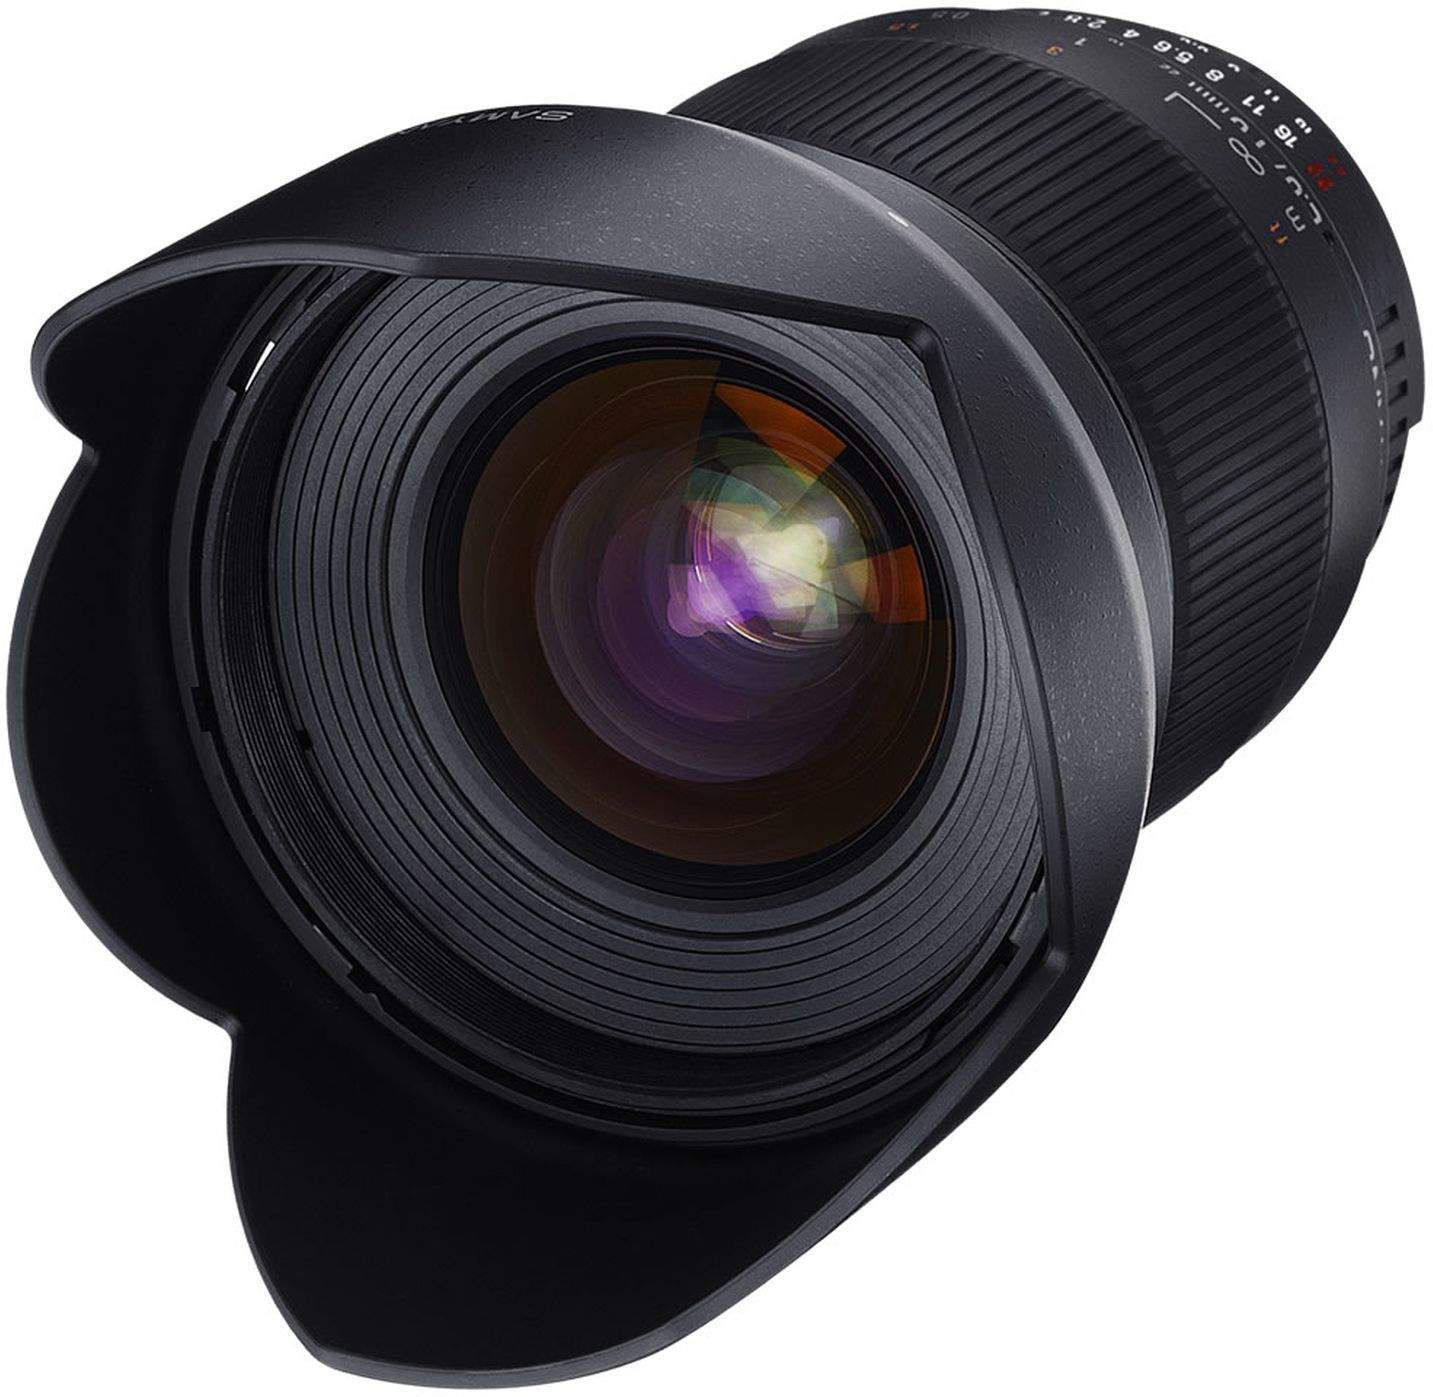 Samyang 16mm F2.0 UMC II APS-C Pentax K Camera Lens